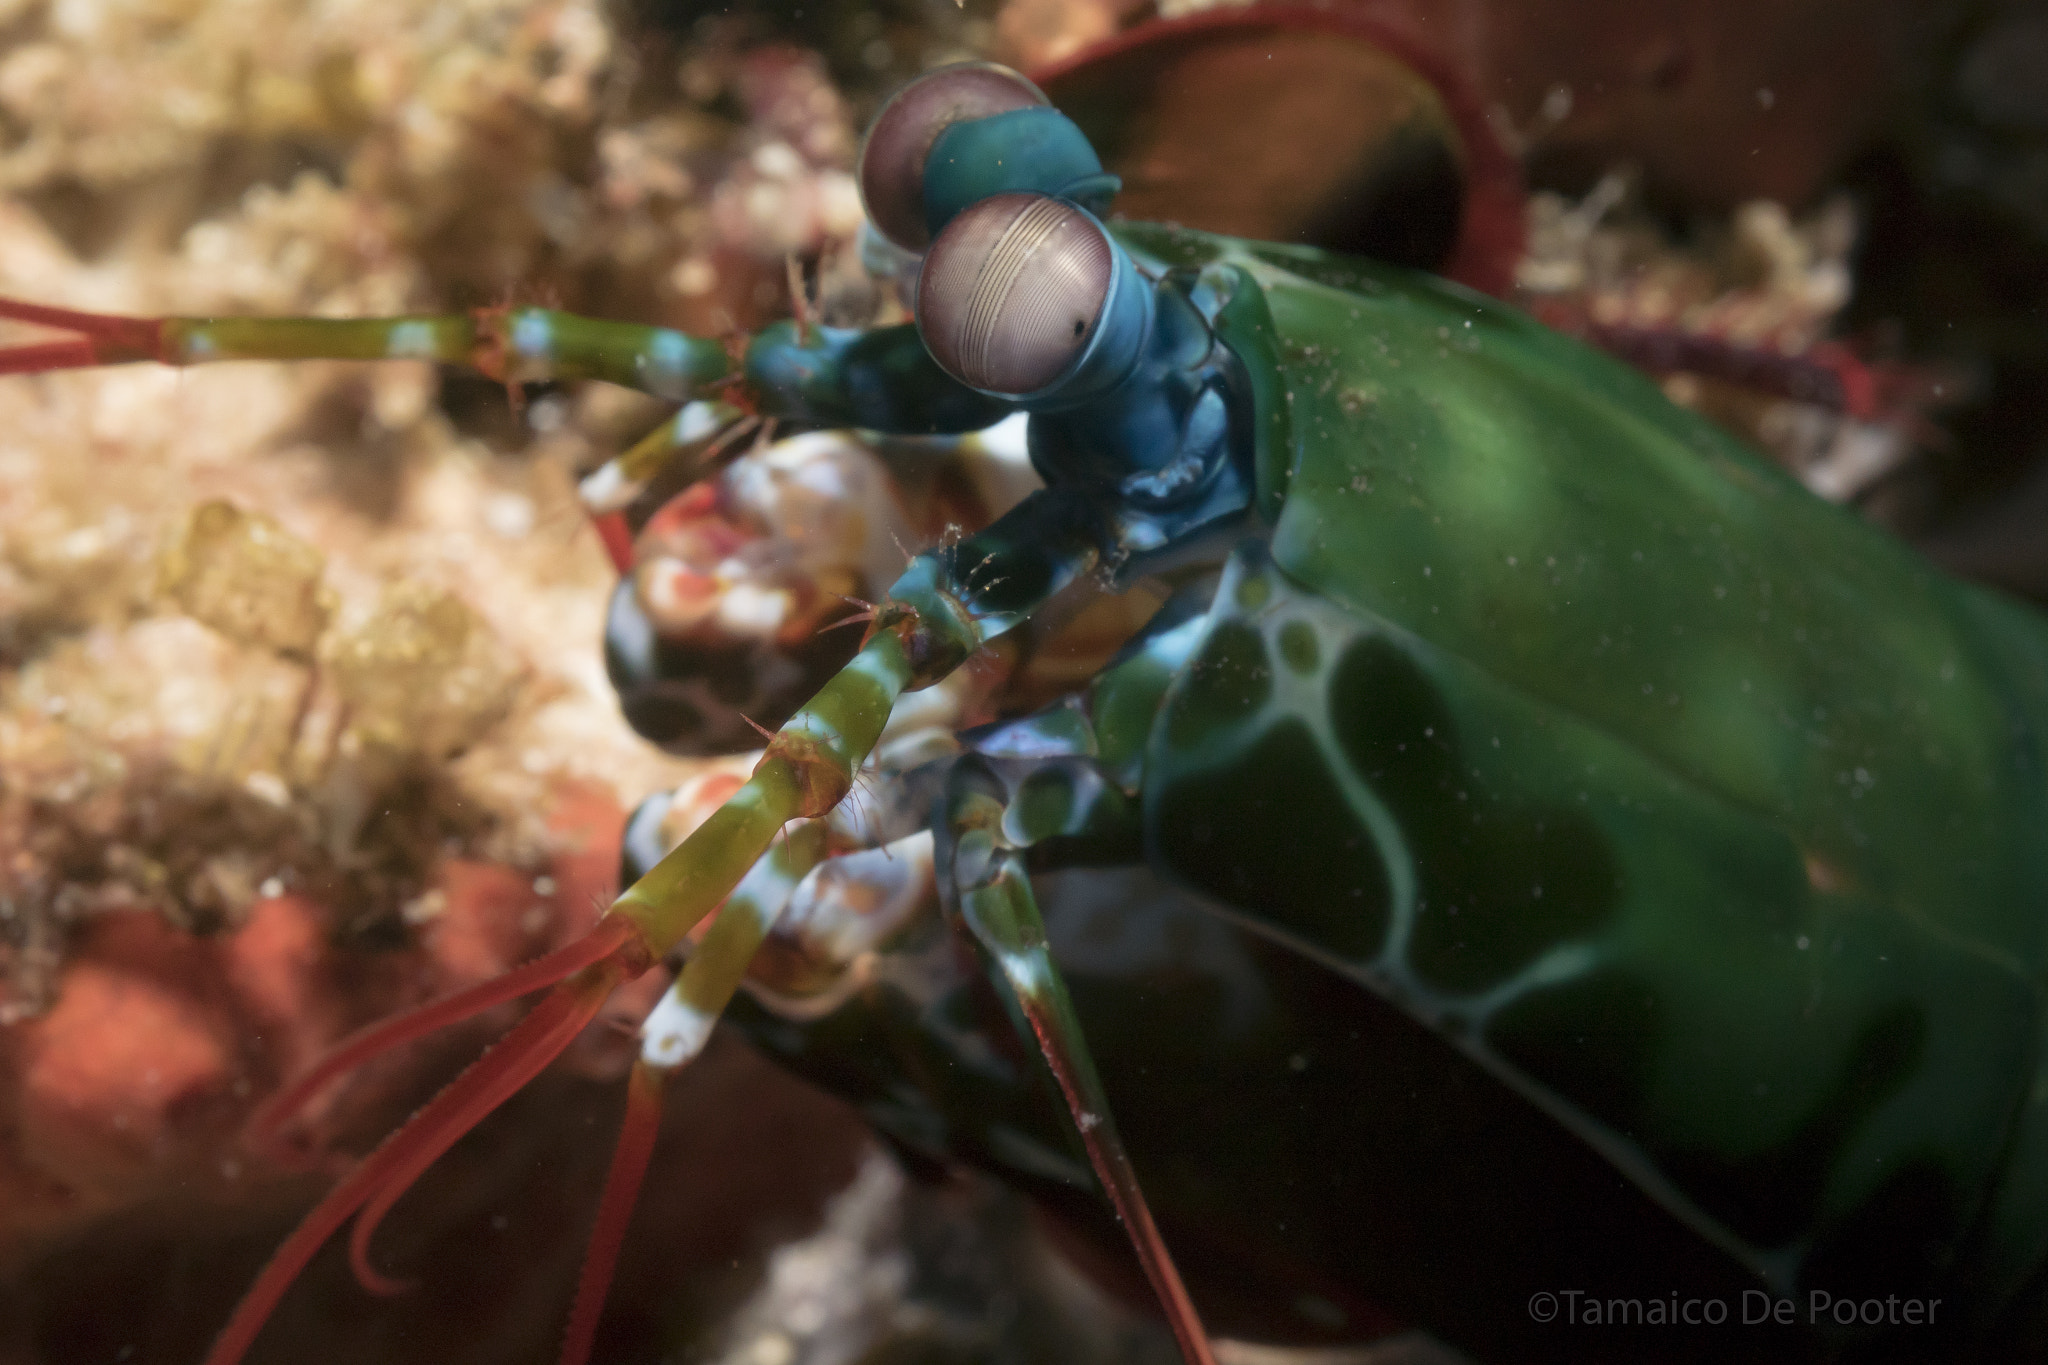 Nikon 1 J4 sample photo. Mantis shrimp photography